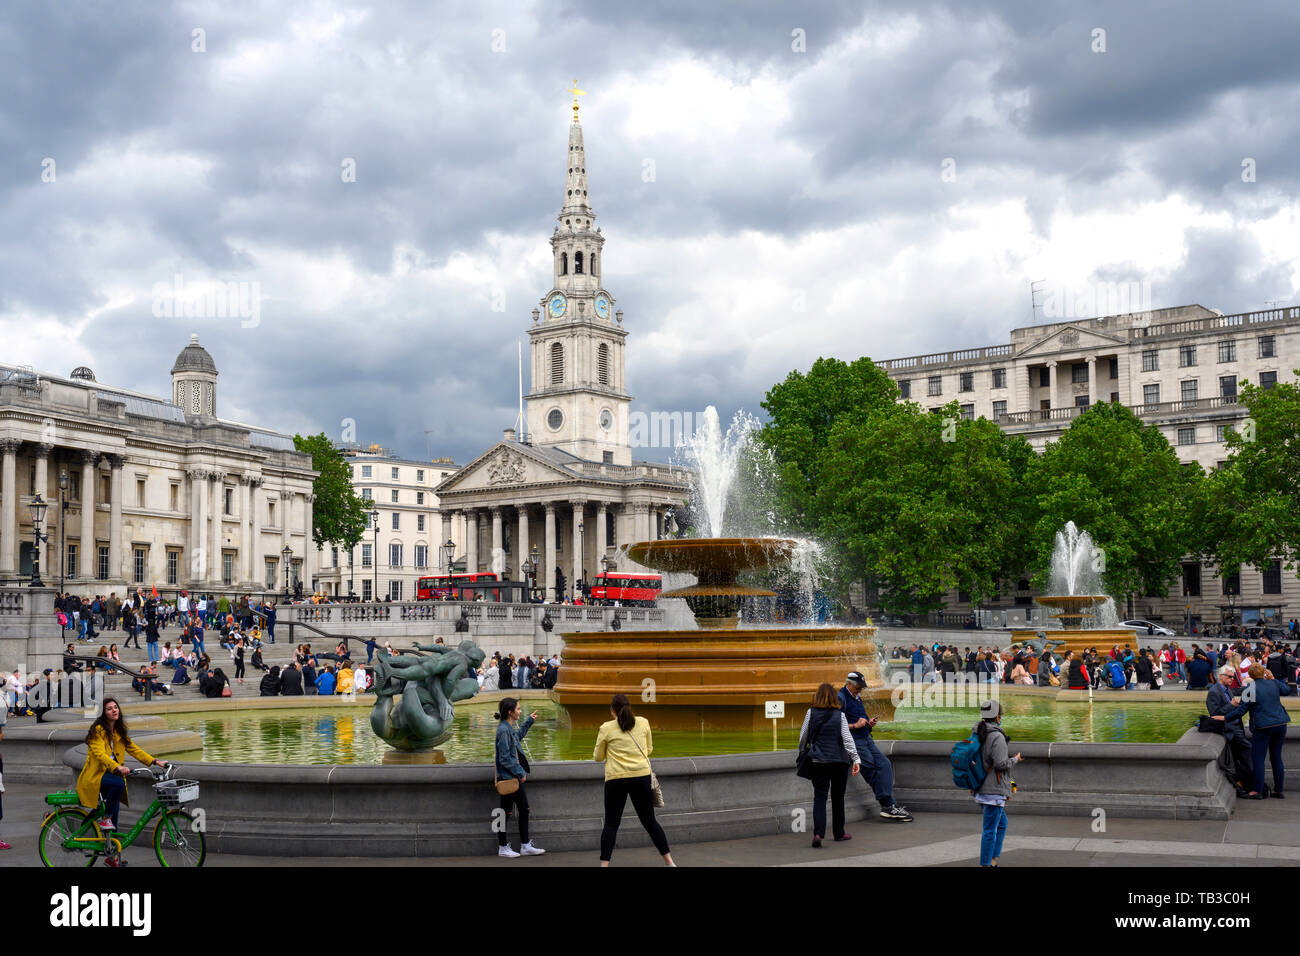 Everyday lifestyle at Trafalgar Square, Westminster, London, England, UK Stock Photo